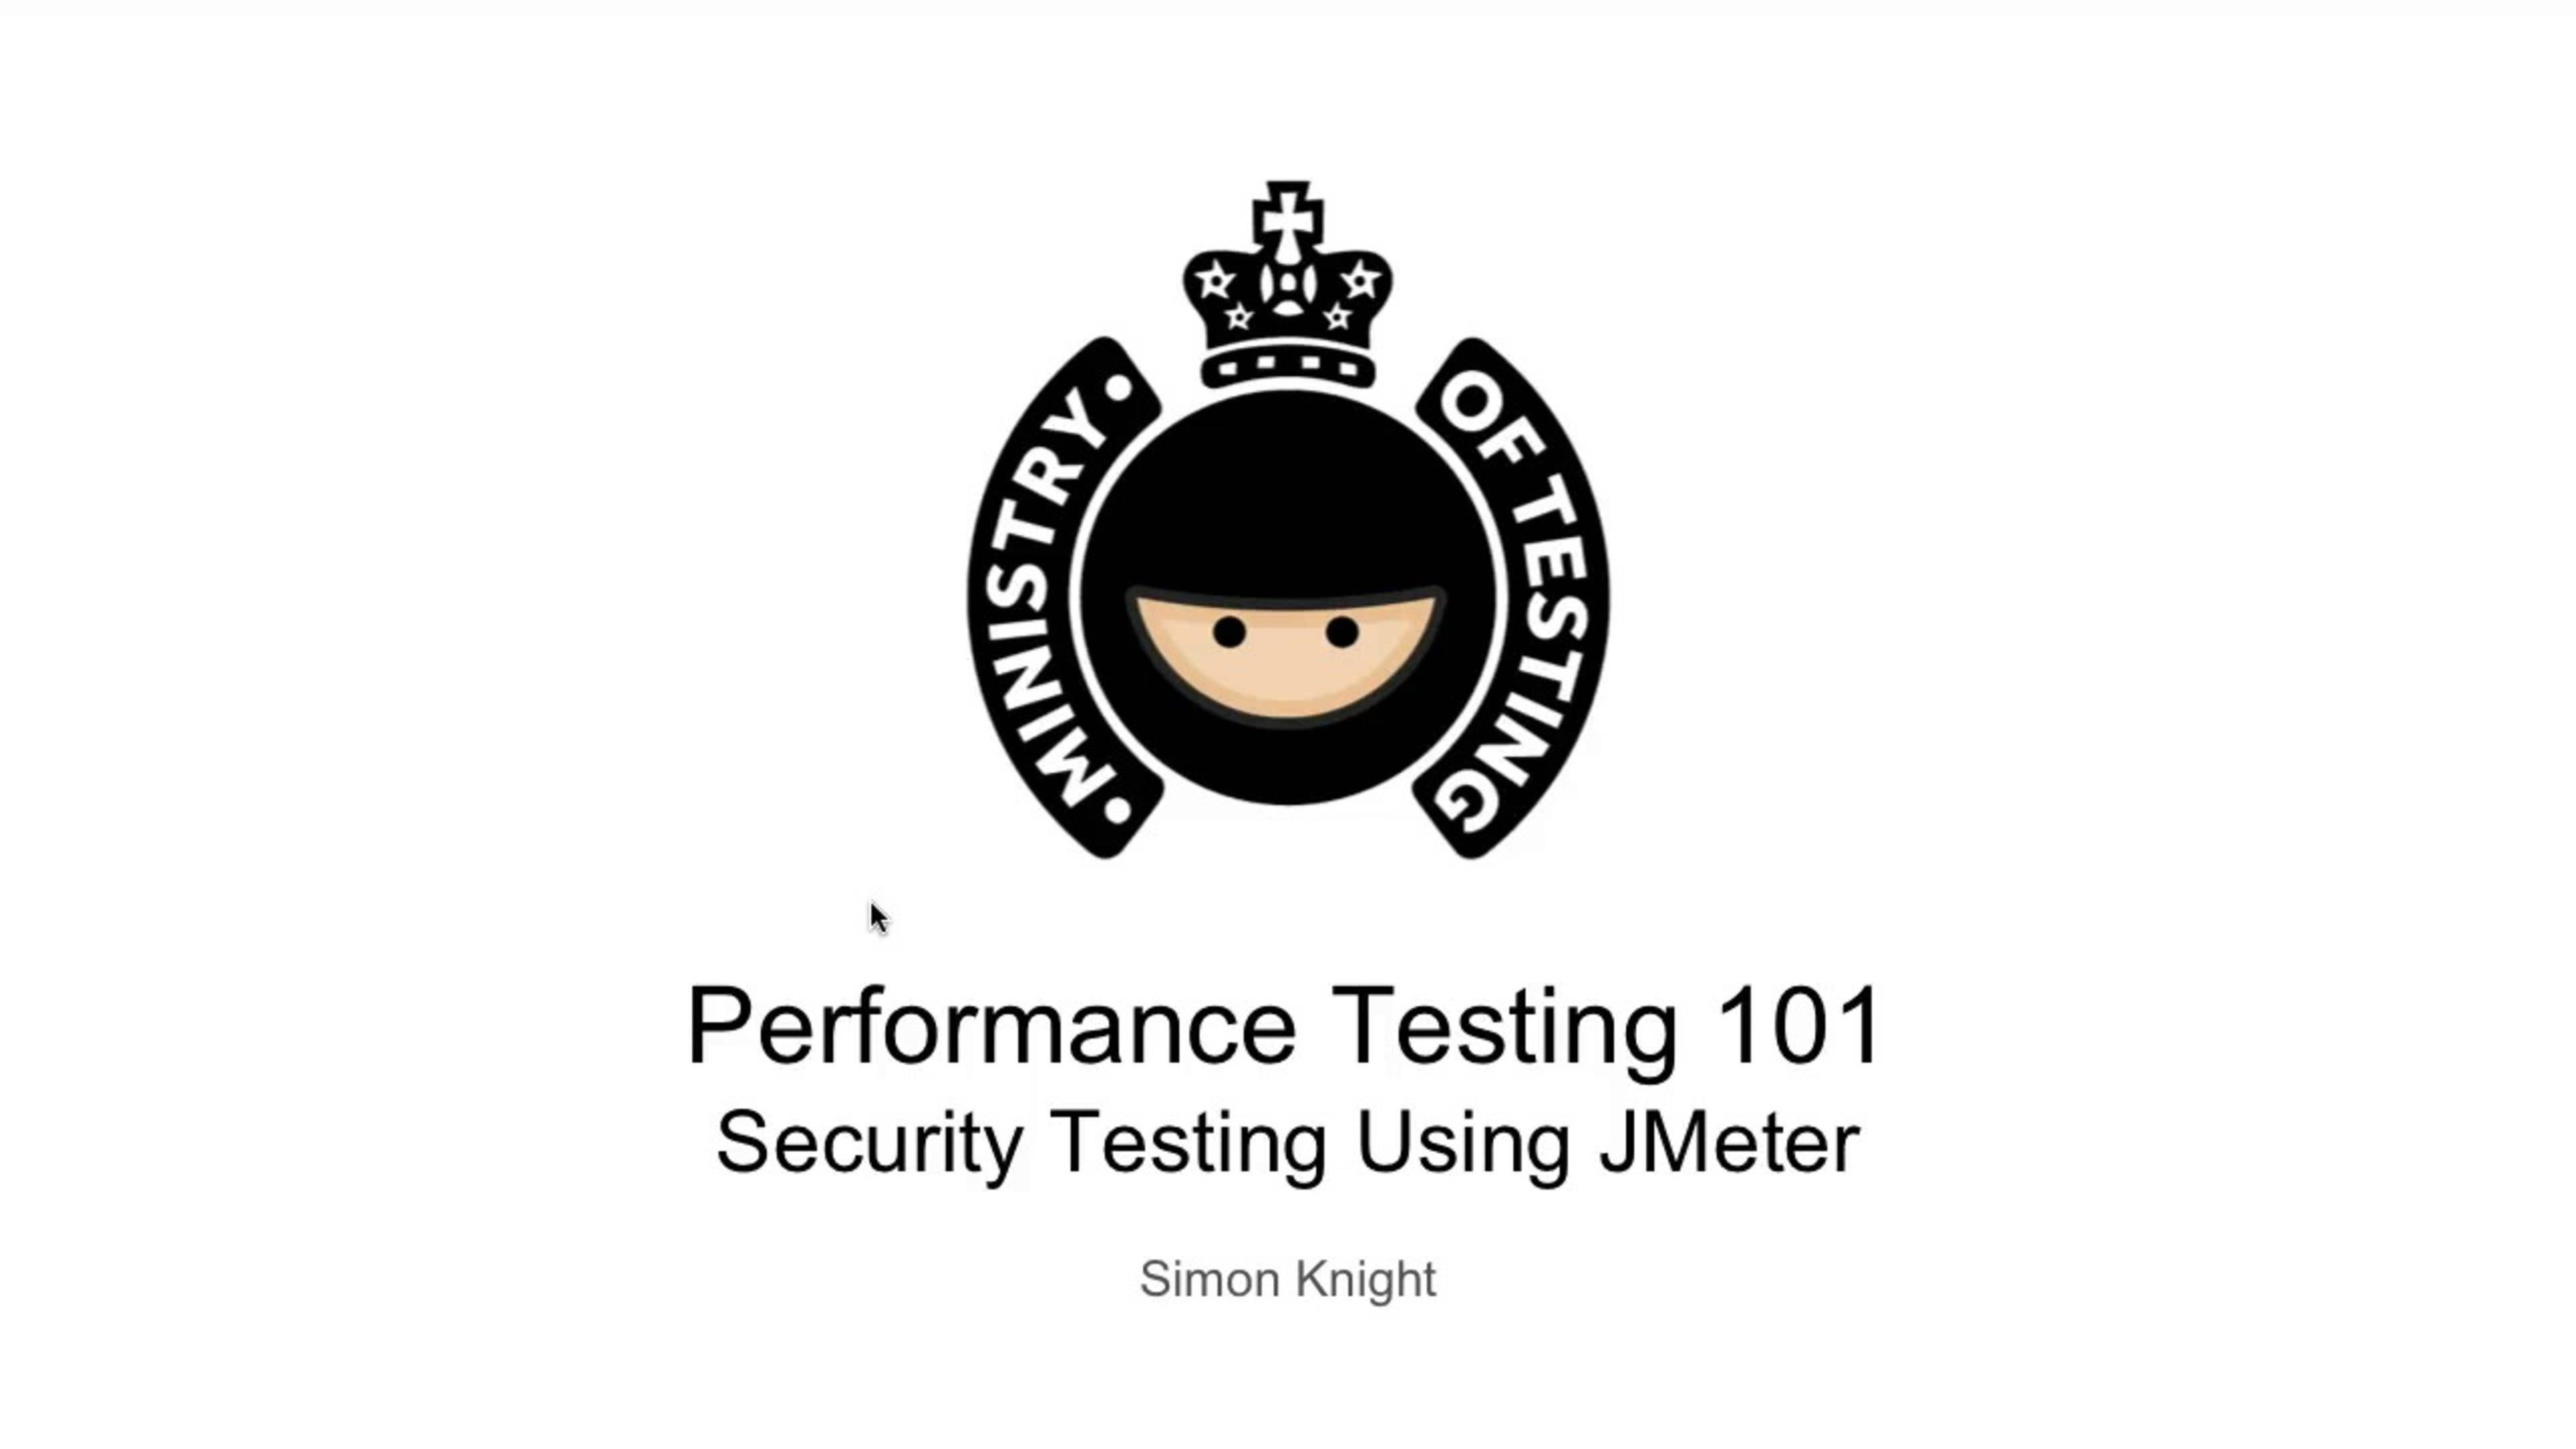 JMeter Logo - Security Testing Using JMeter